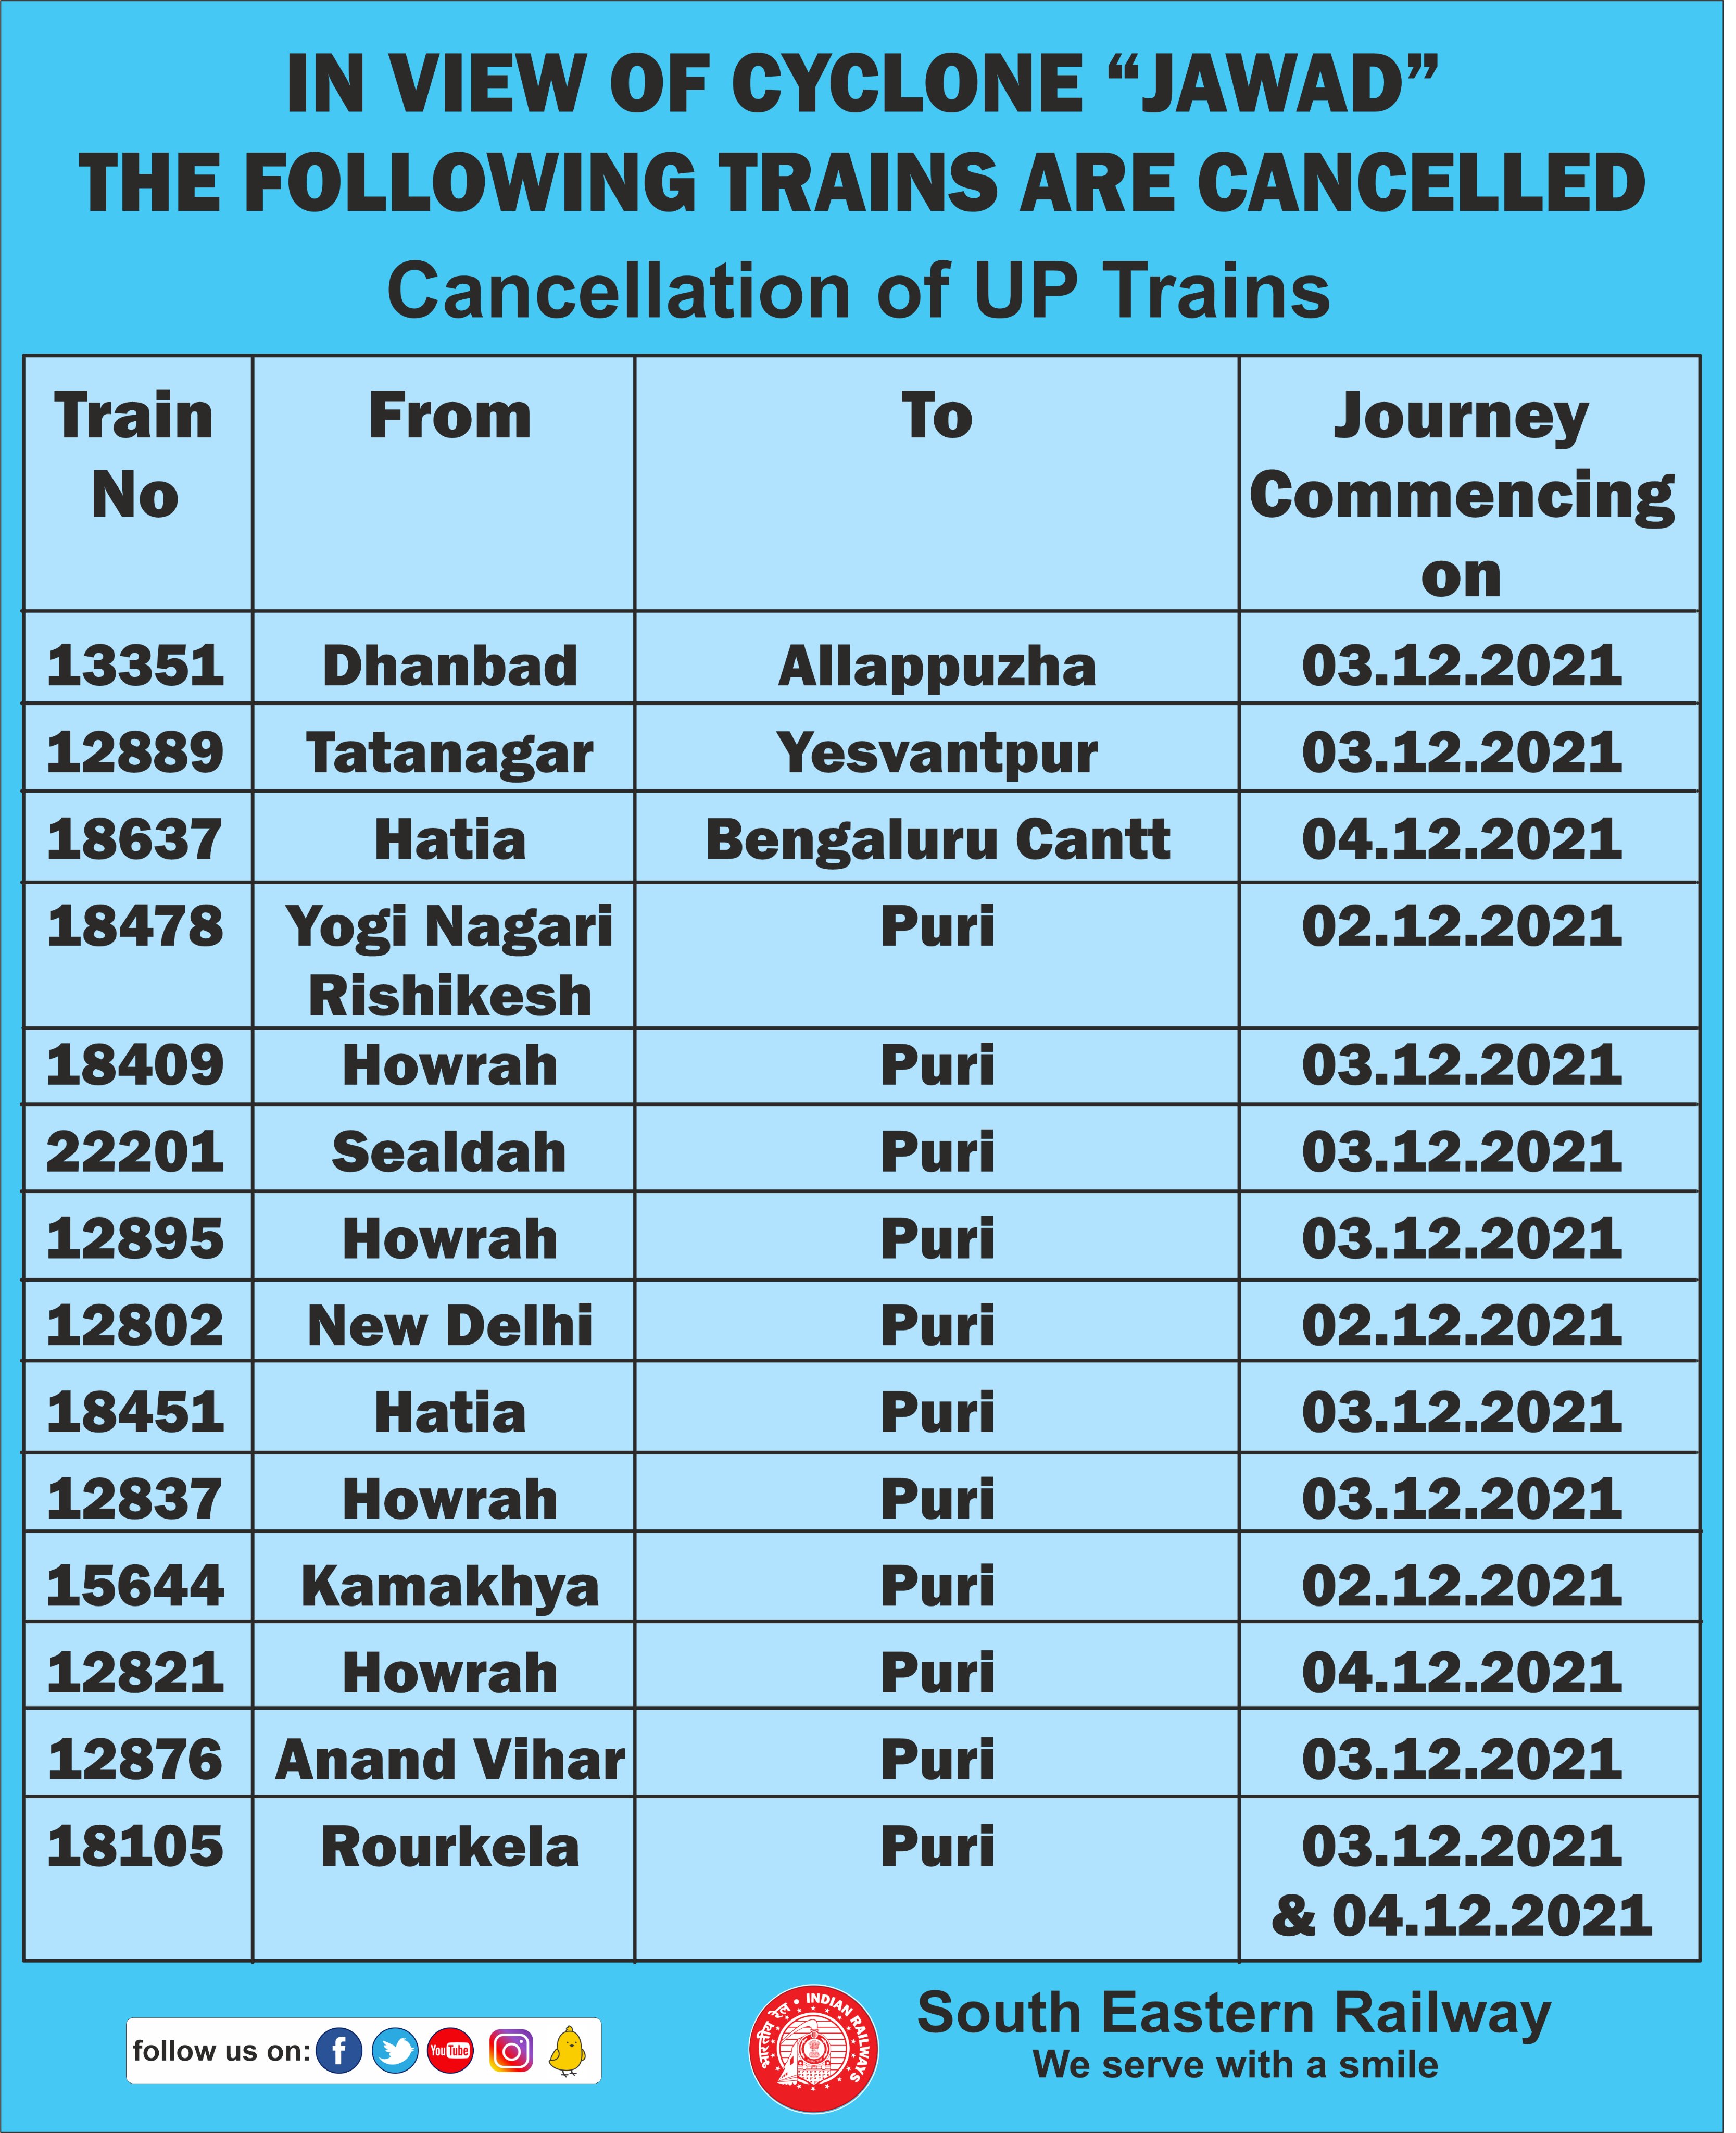 परेशानी से बचने के लिए यहां देखें पूरी लिस्ट (Indian Railways/IRCTC Train Cancelled)